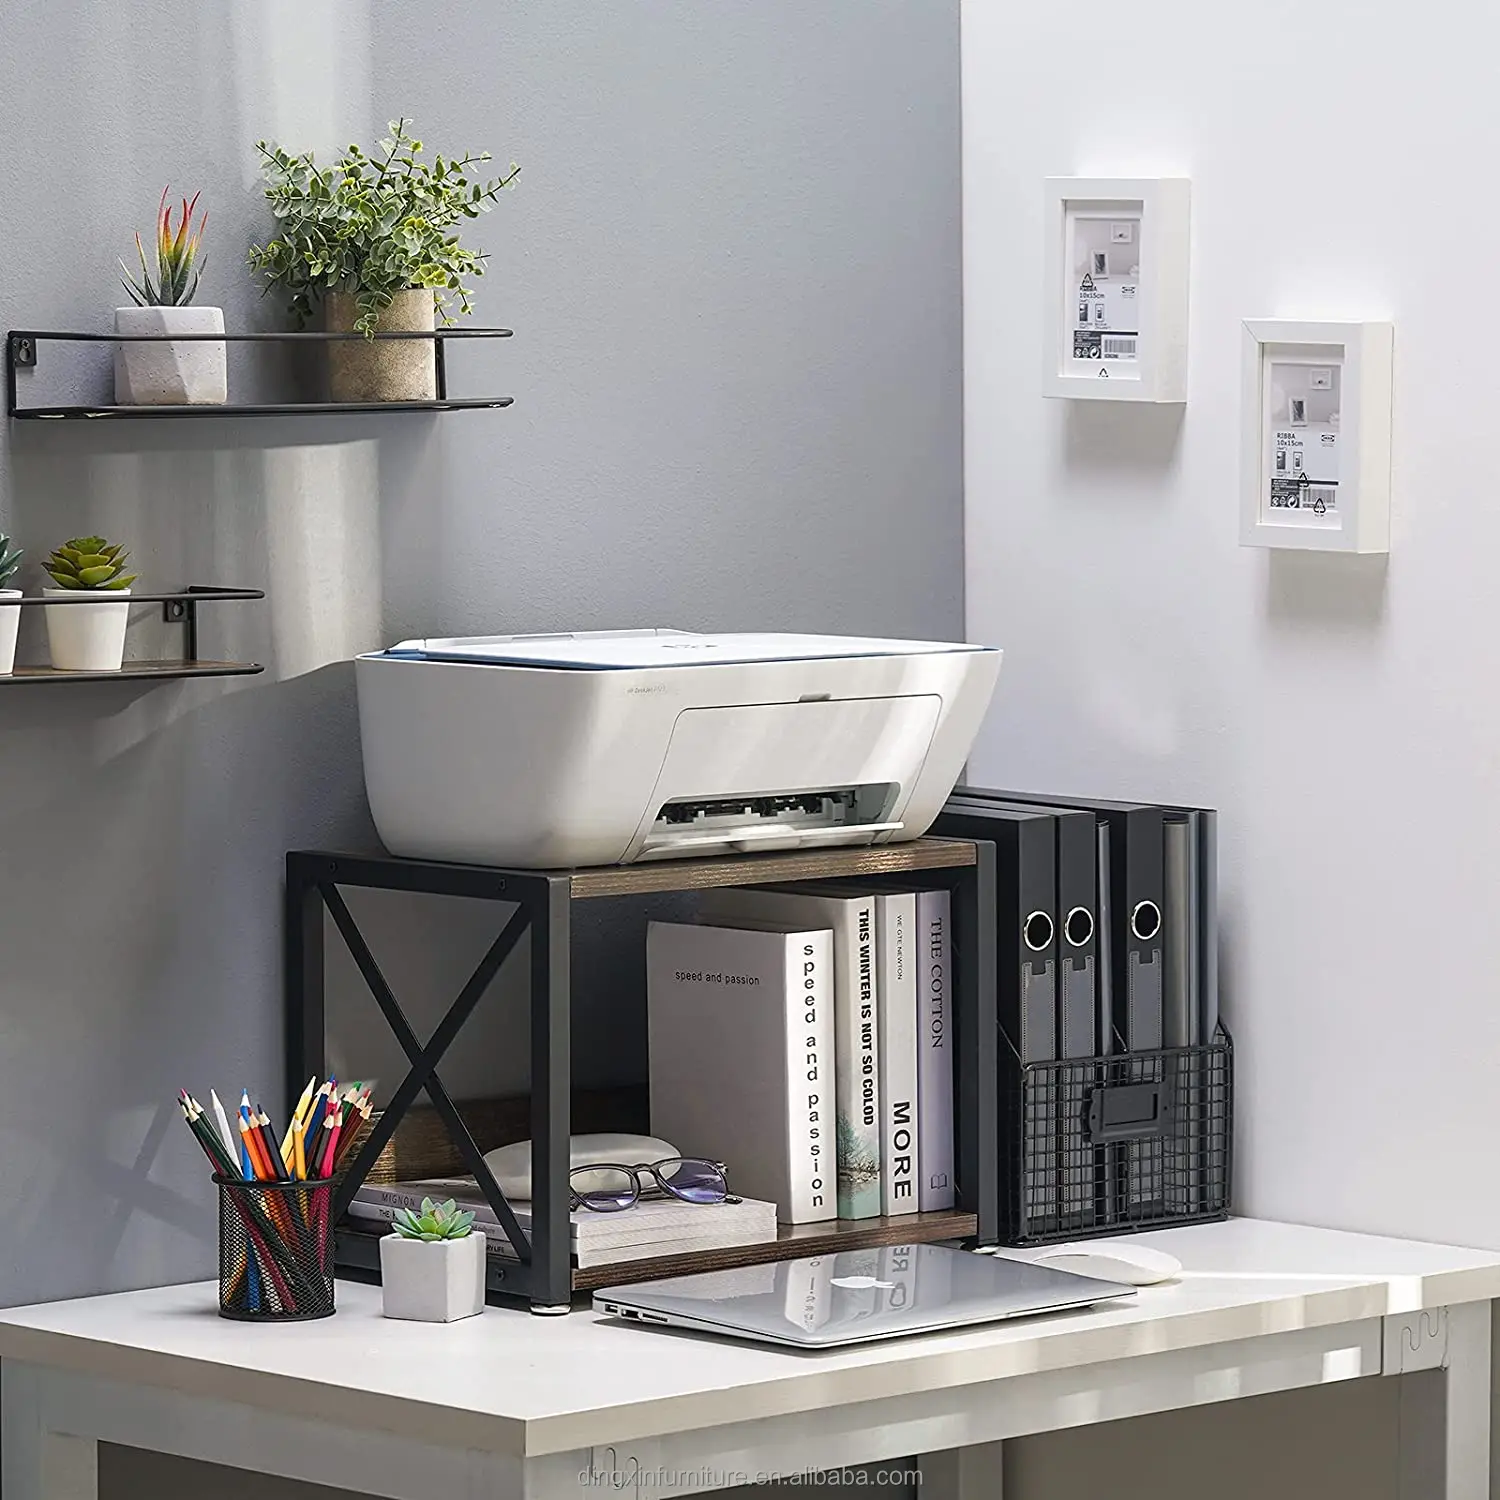 escáner oficina y hogar con almohadillas antideslizantes organizador escritorio 2 niveles fotocopiadora Soporte de impresora madera para dispositivos fax libros soporte impresora estantería 